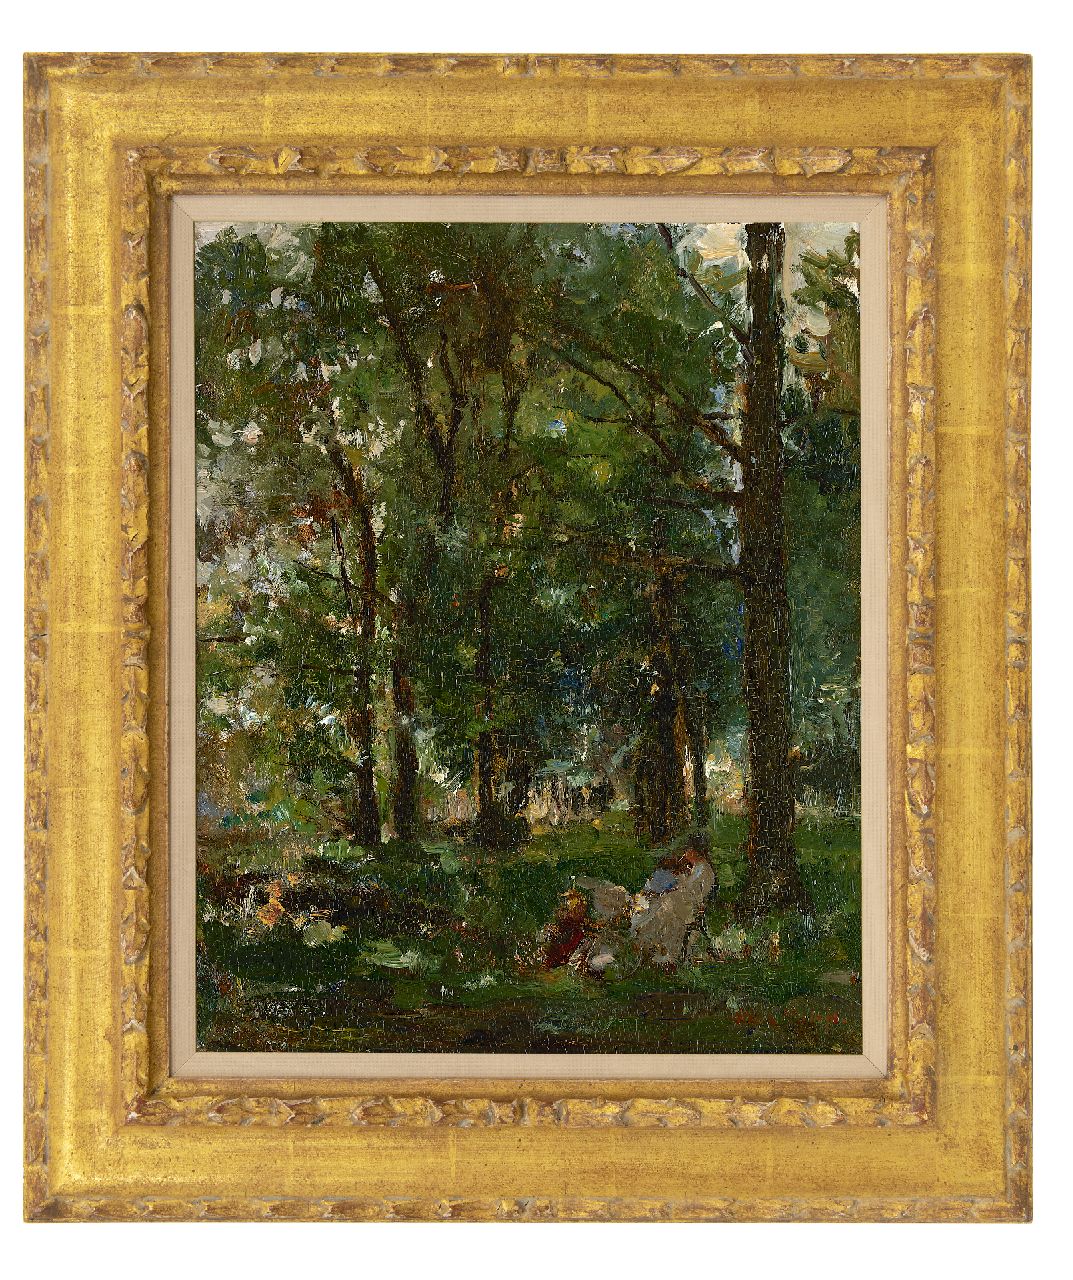 Roelofs O.W.A.  | Otto Willem Albertus 'Albert' Roelofs | Schilderijen te koop aangeboden | In het park, olieverf op paneel 39,5 x 31,8 cm, gesigneerd rechtsonder